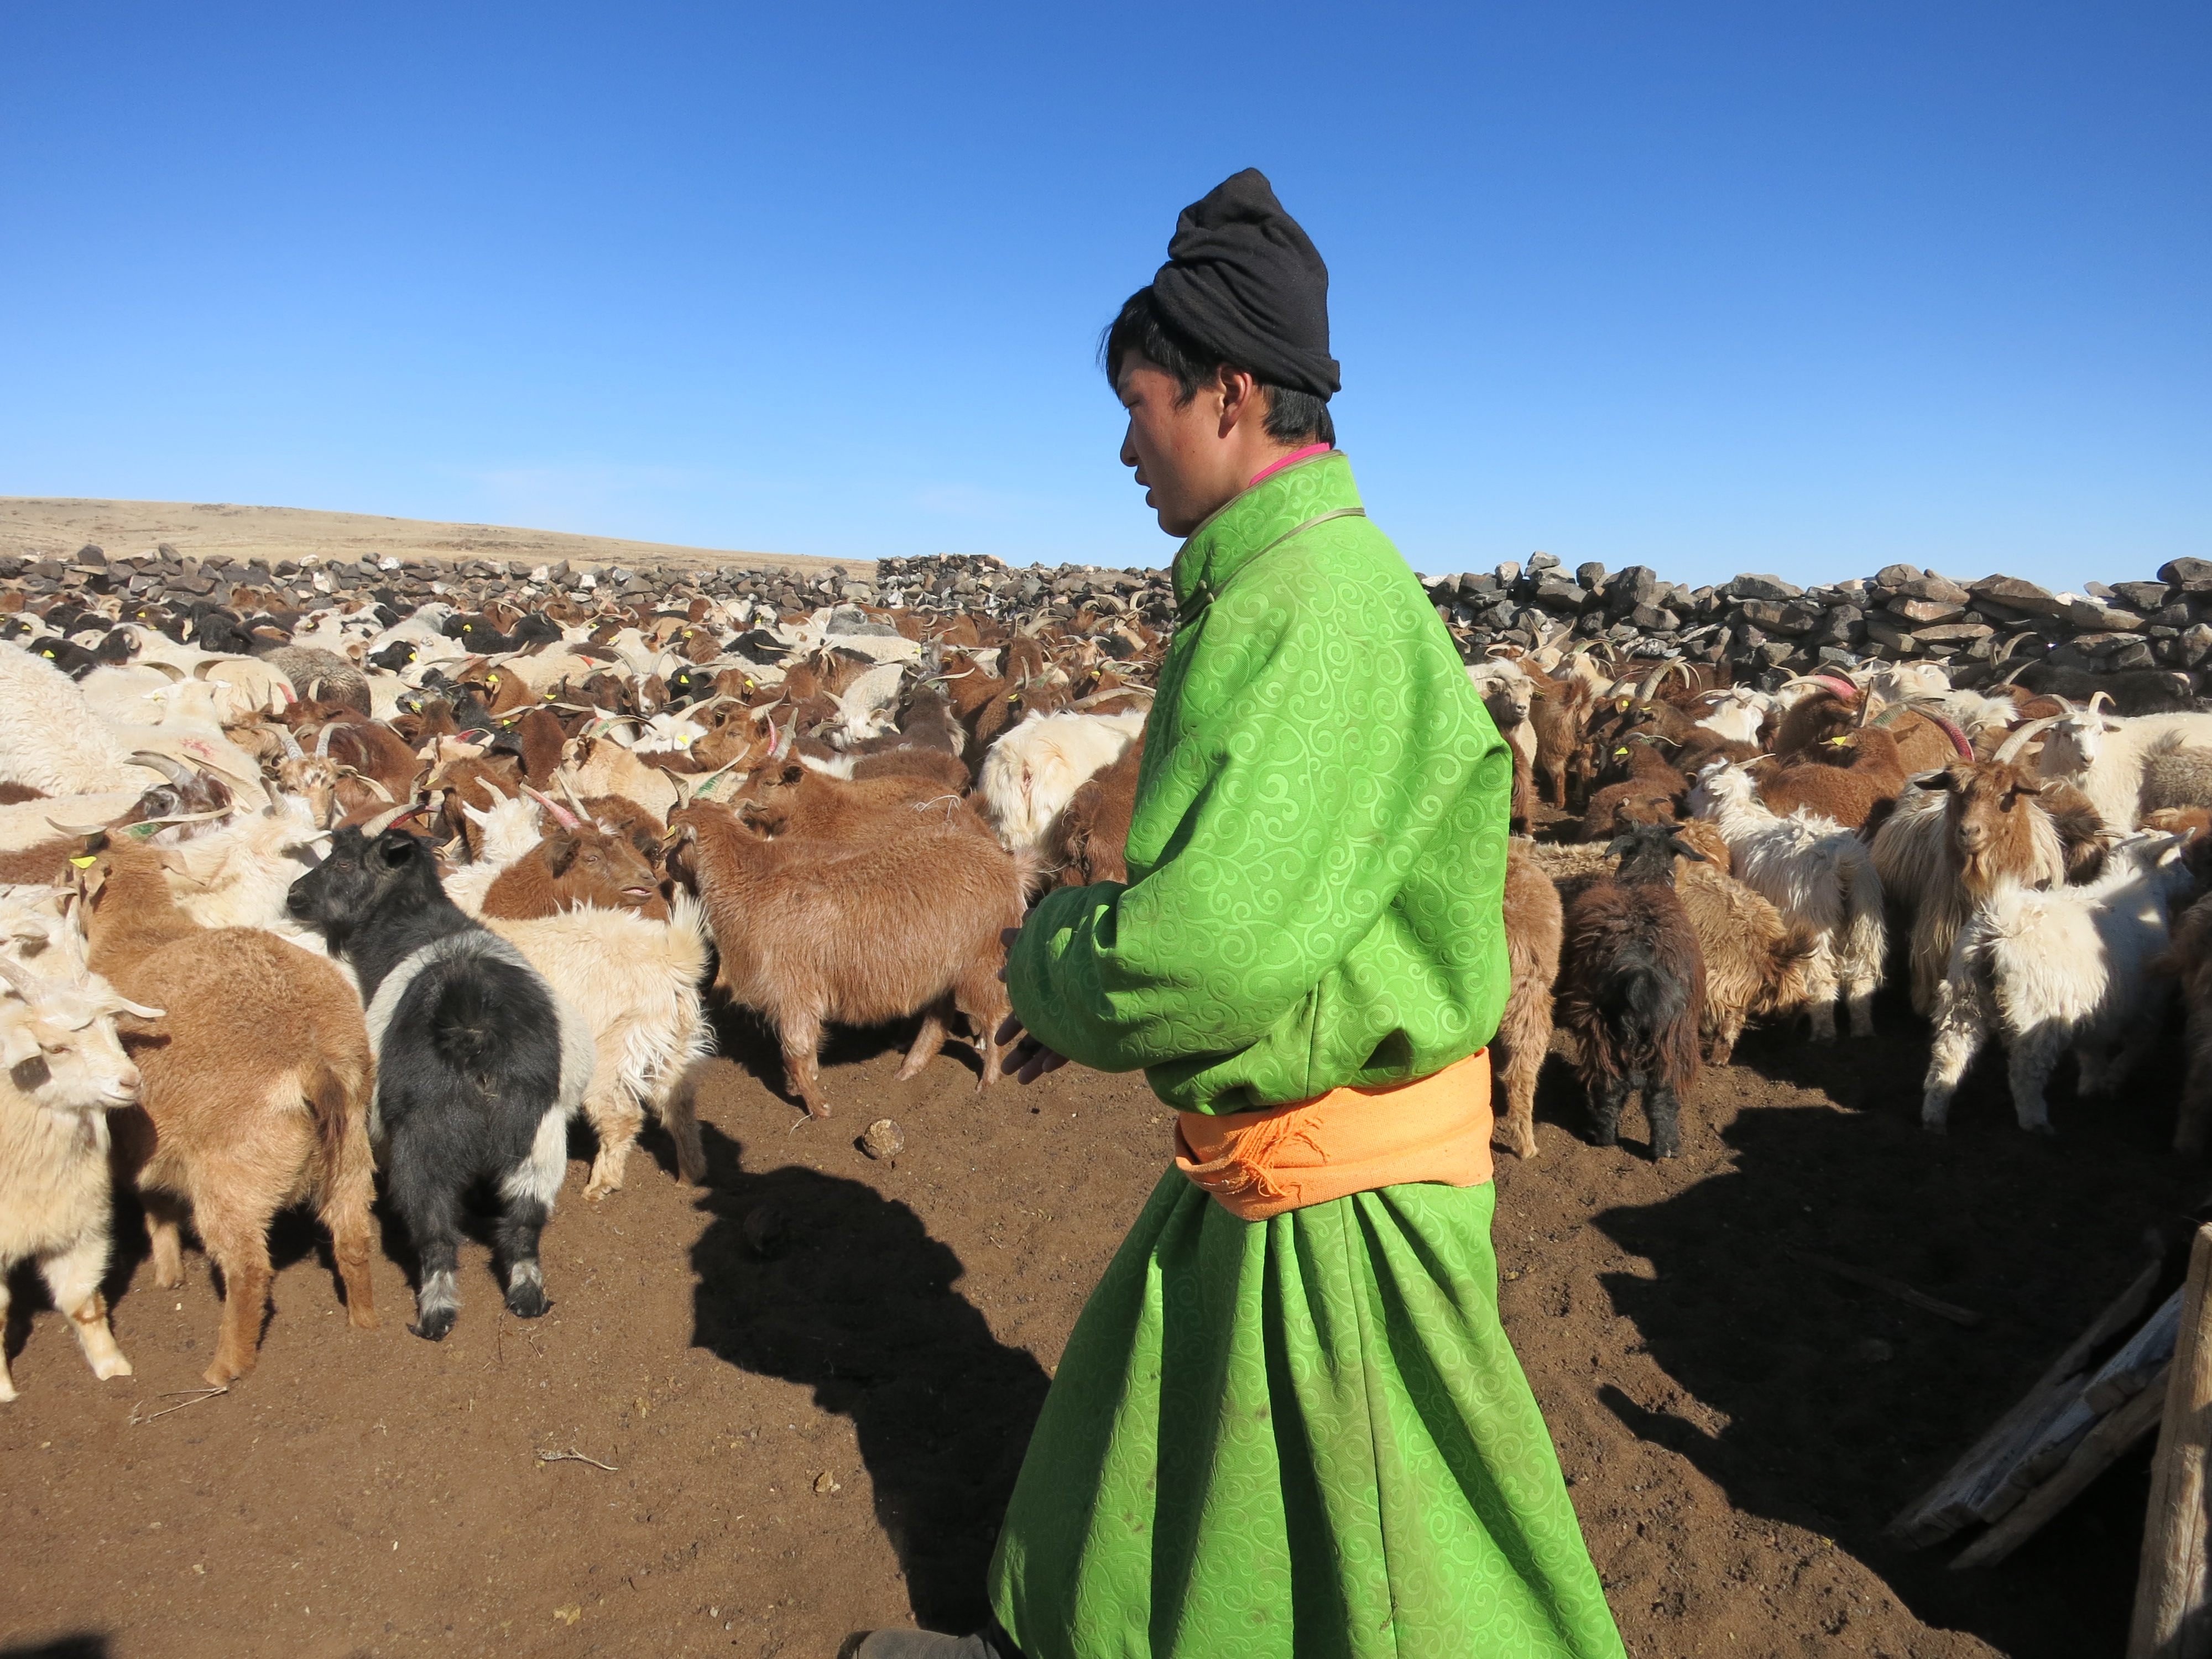 Un ragazzo con un abito tradizionale da lavoro di colore verde acceso conduce un gregge di capre.